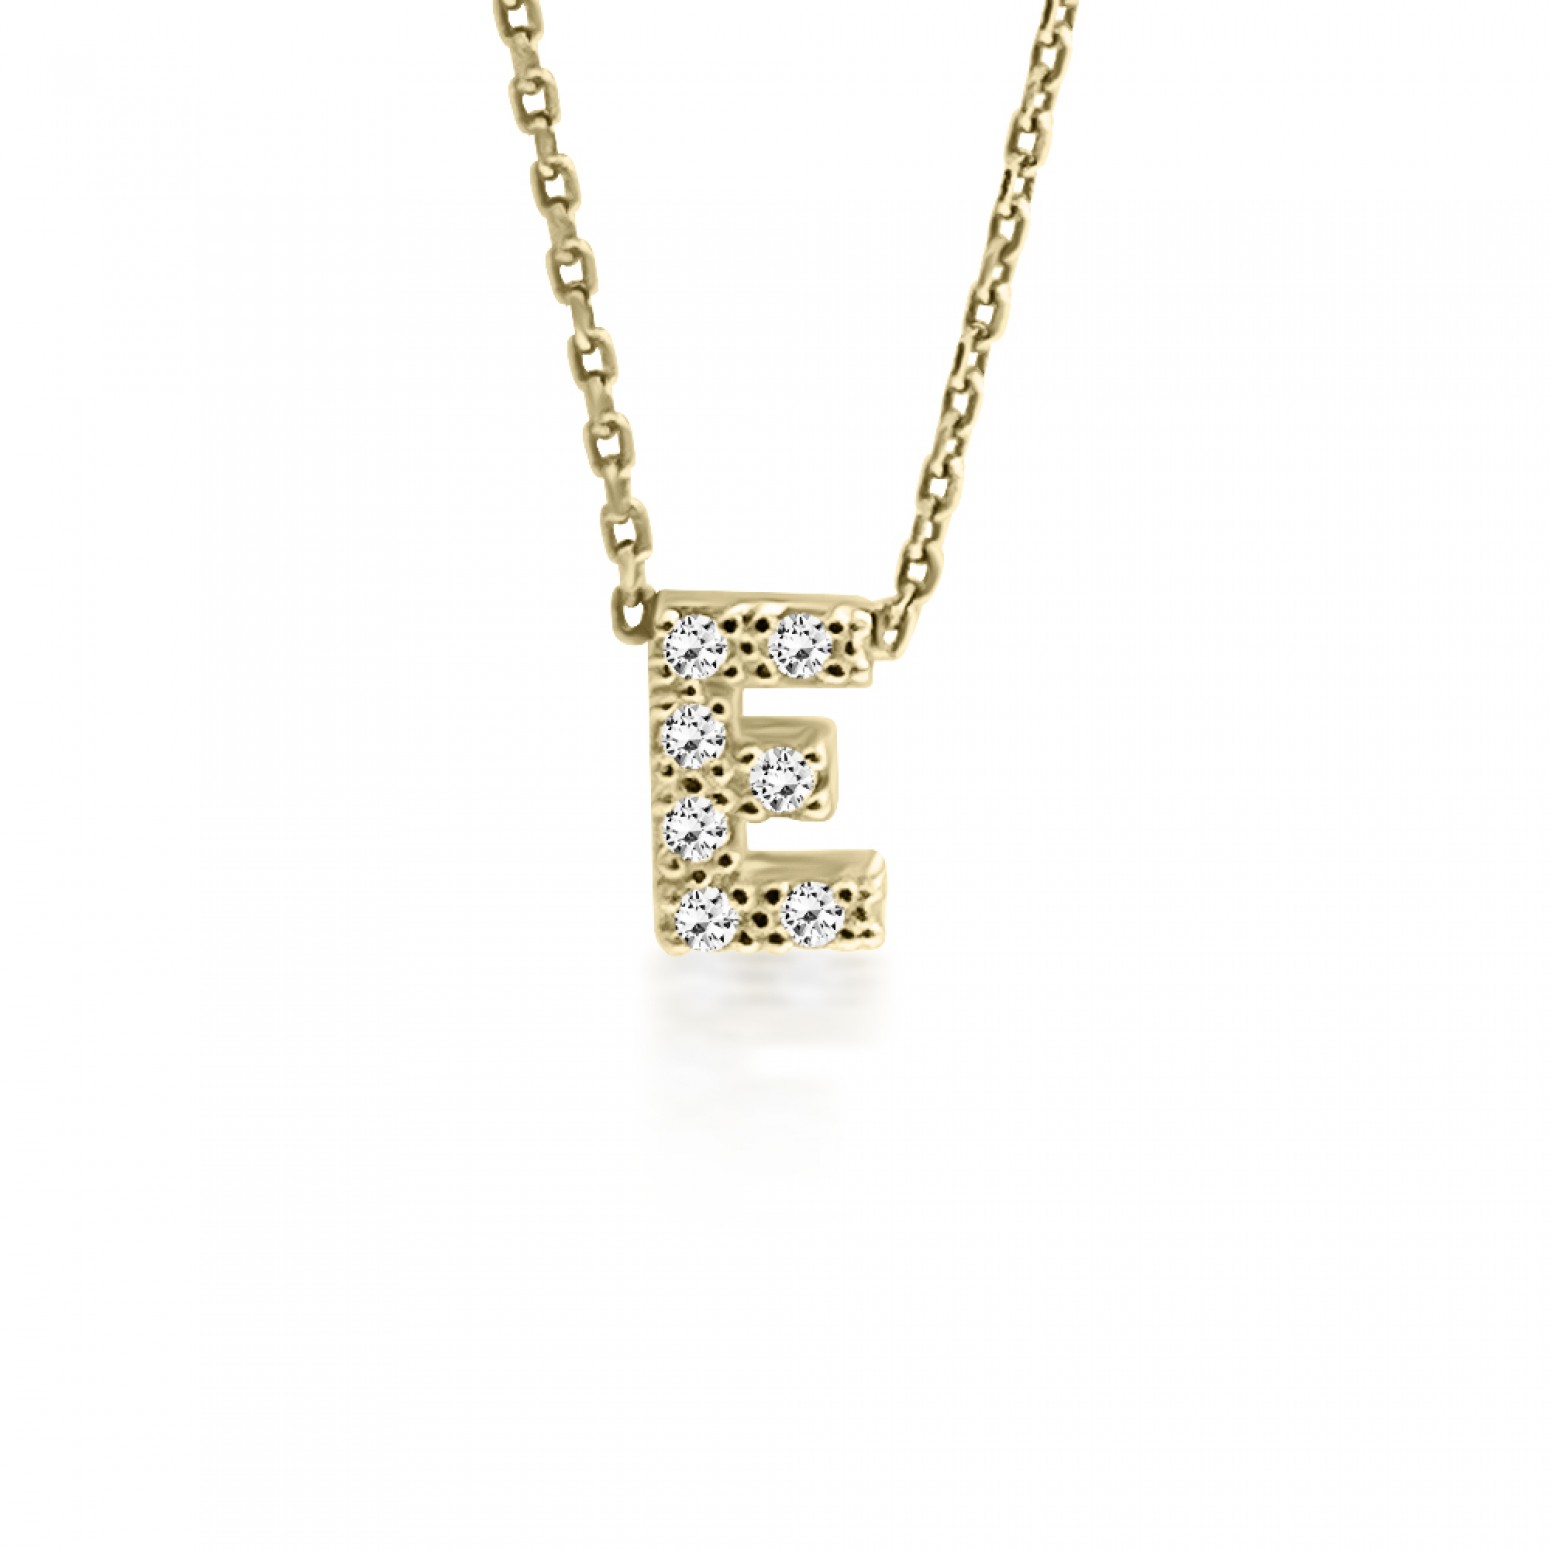 Monogram necklace Ε, Κ14 gold with zircon, ko5196 NECKLACES Κοσμηματα - chrilia.gr